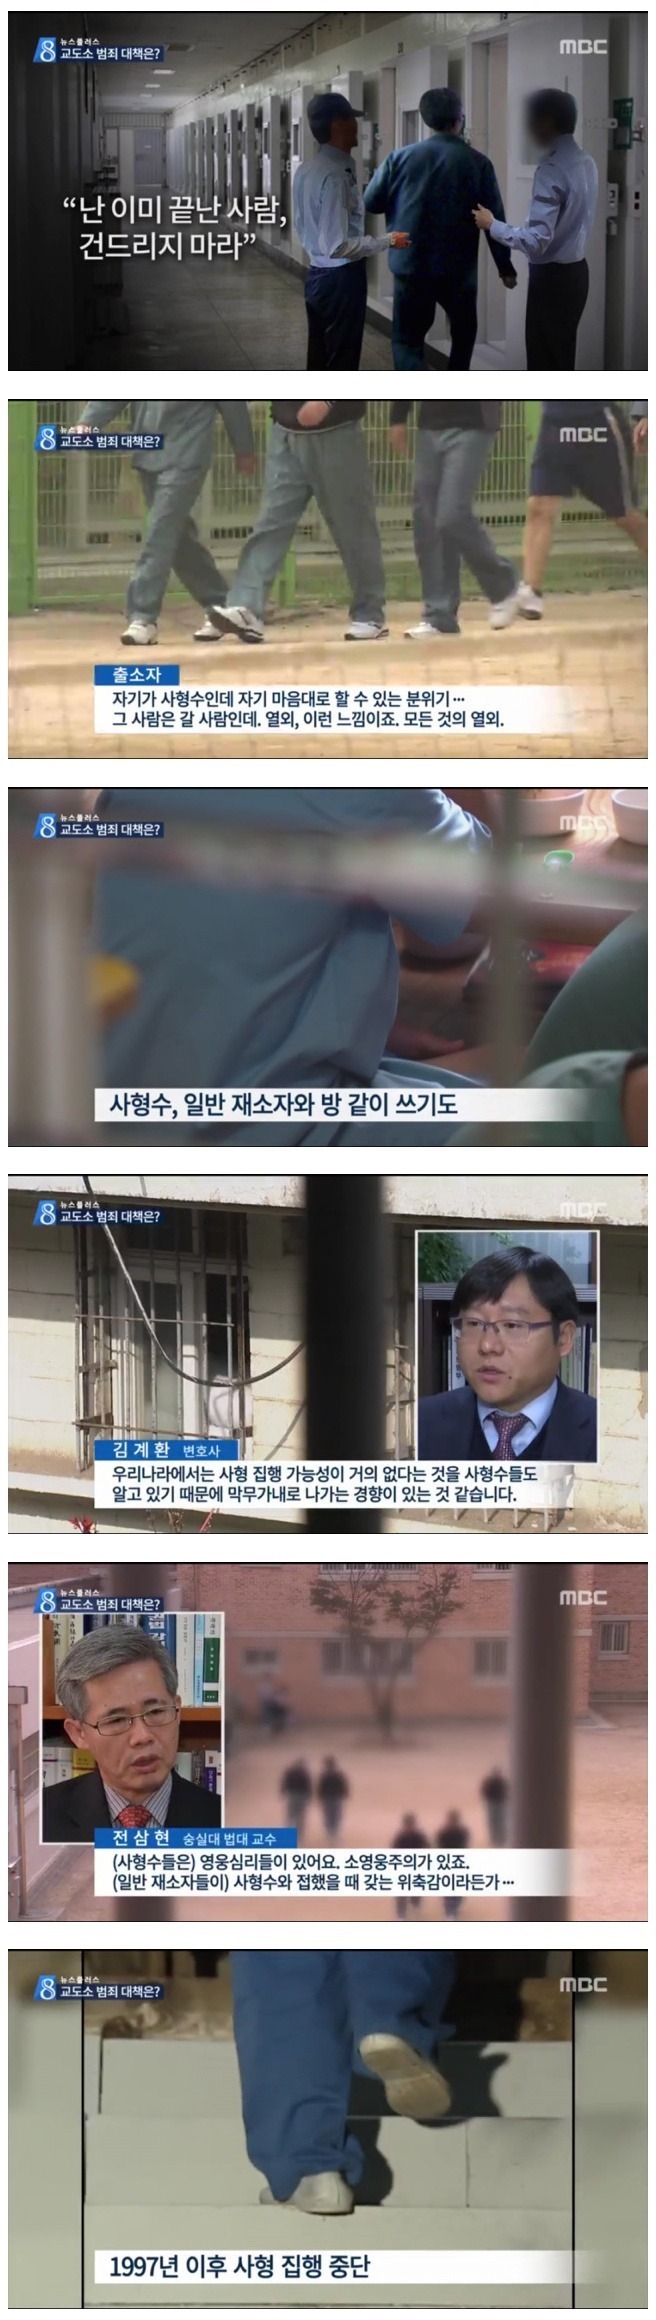 막무가내로 나가는 한국의 사형수들